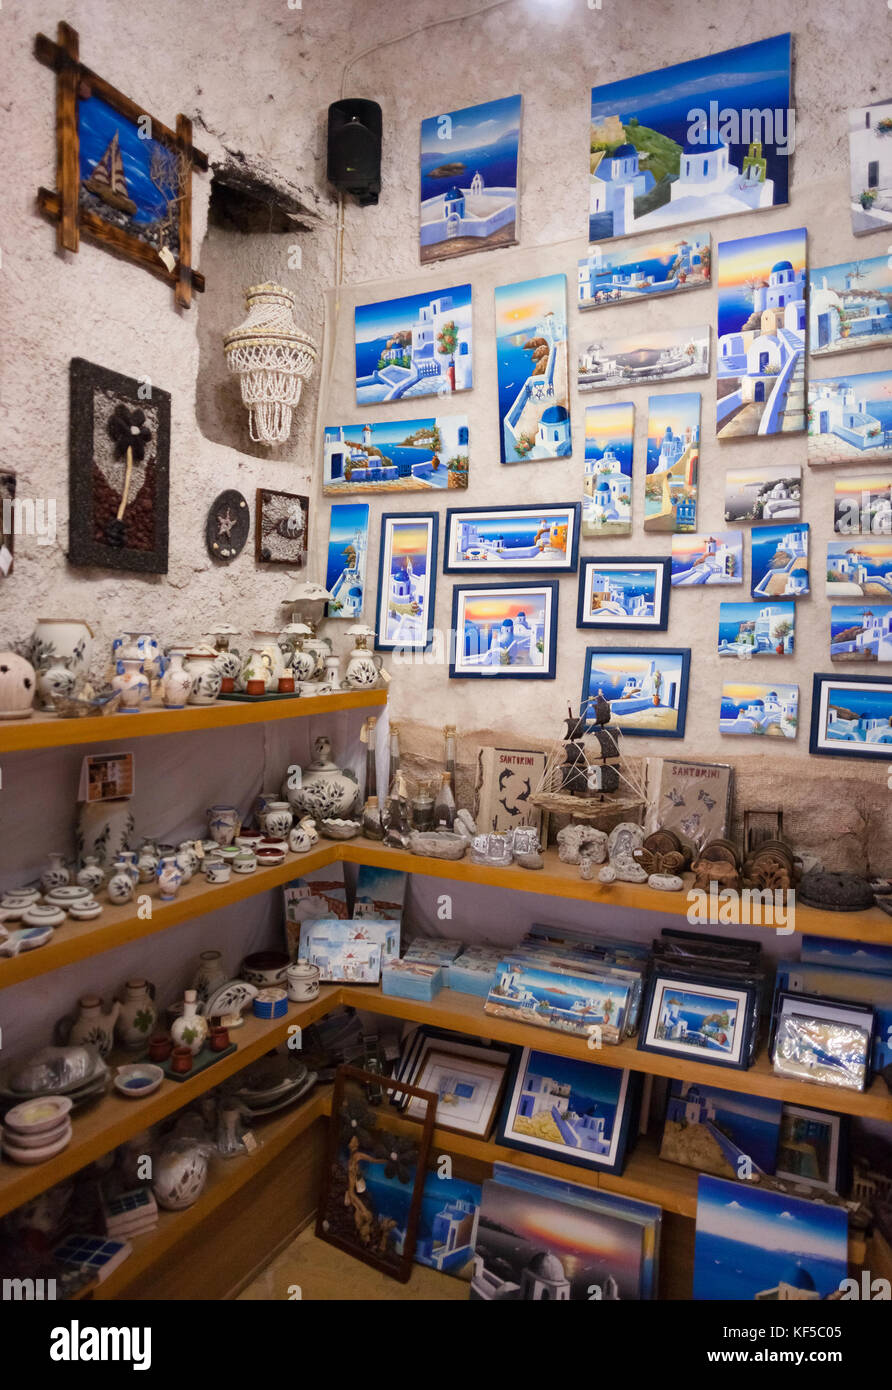 L'île de Santorin, Grèce - 19 juillet 2012 : Boutique de souvenirs à Santorin. Les habitants de vendre aux touristes la maison de souvenirs. Banque D'Images